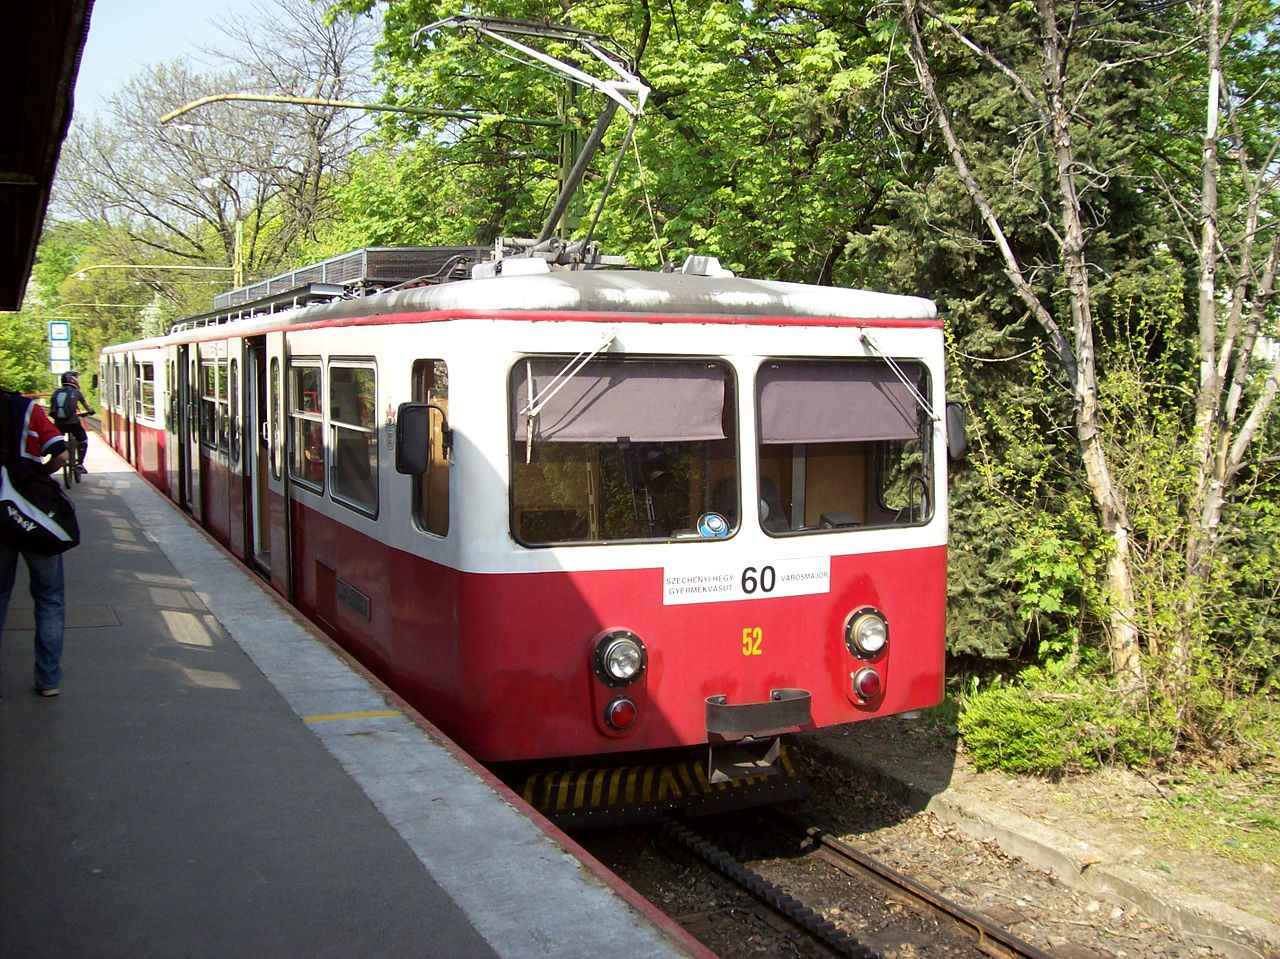 سكة حديد Cogwheel ، بودابست ، النقل